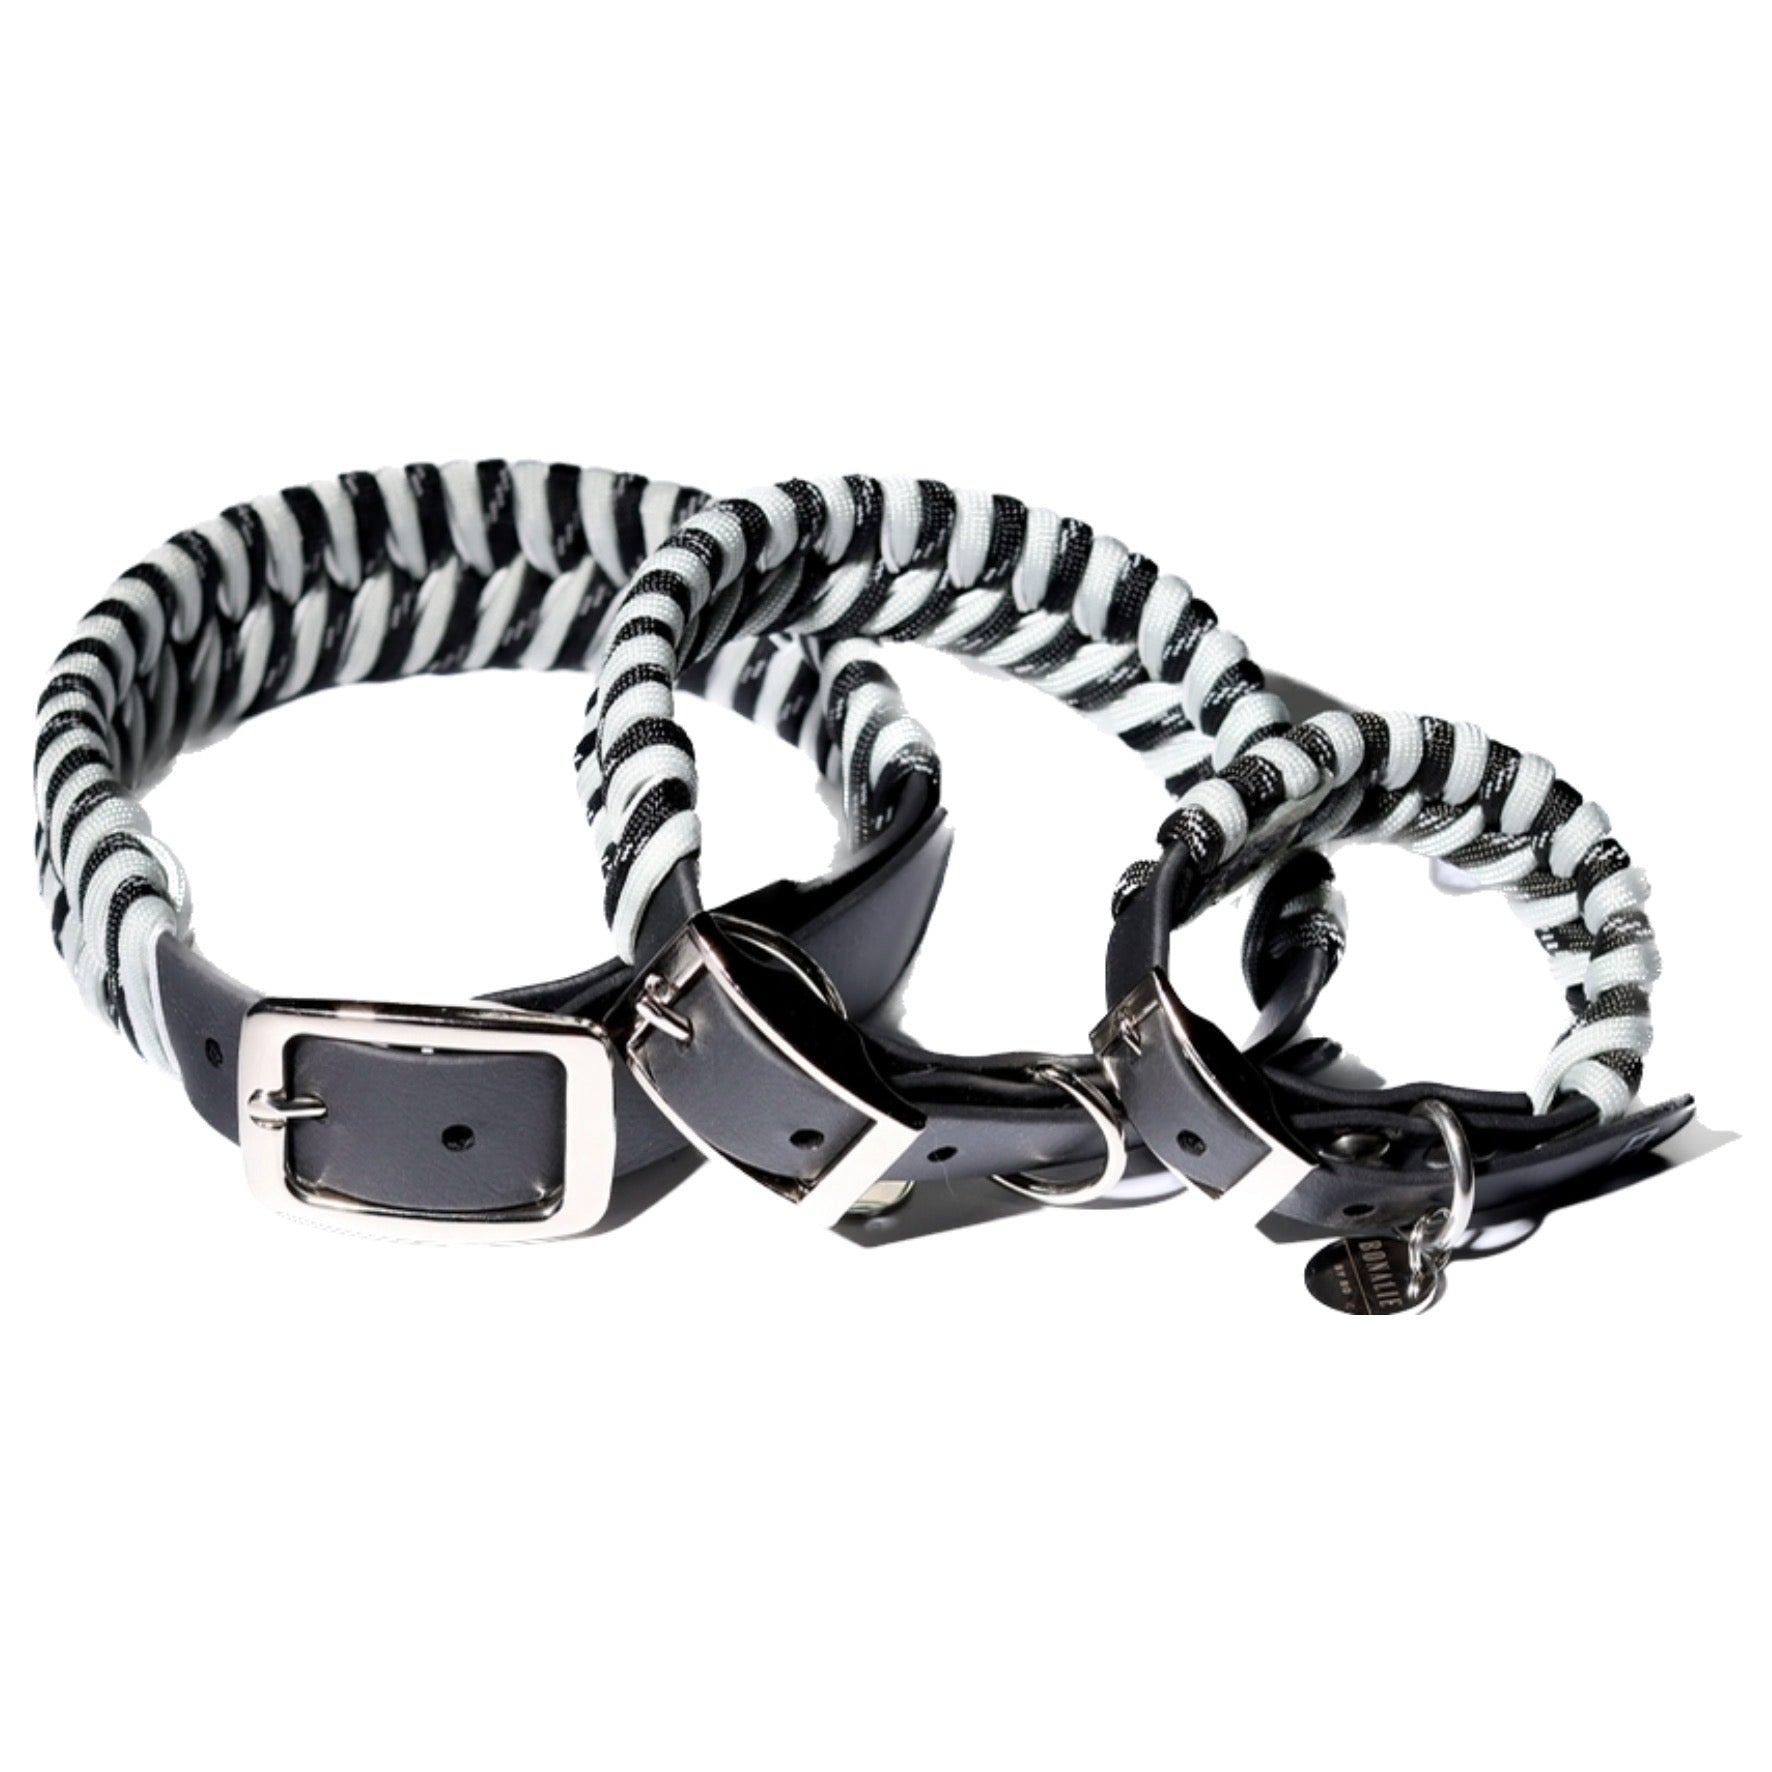 Biothane Halsbänder in drei größen für ganz große bis ganz kleine Hunde zum verstellen in schwarz reflektierend und silberner schnalle